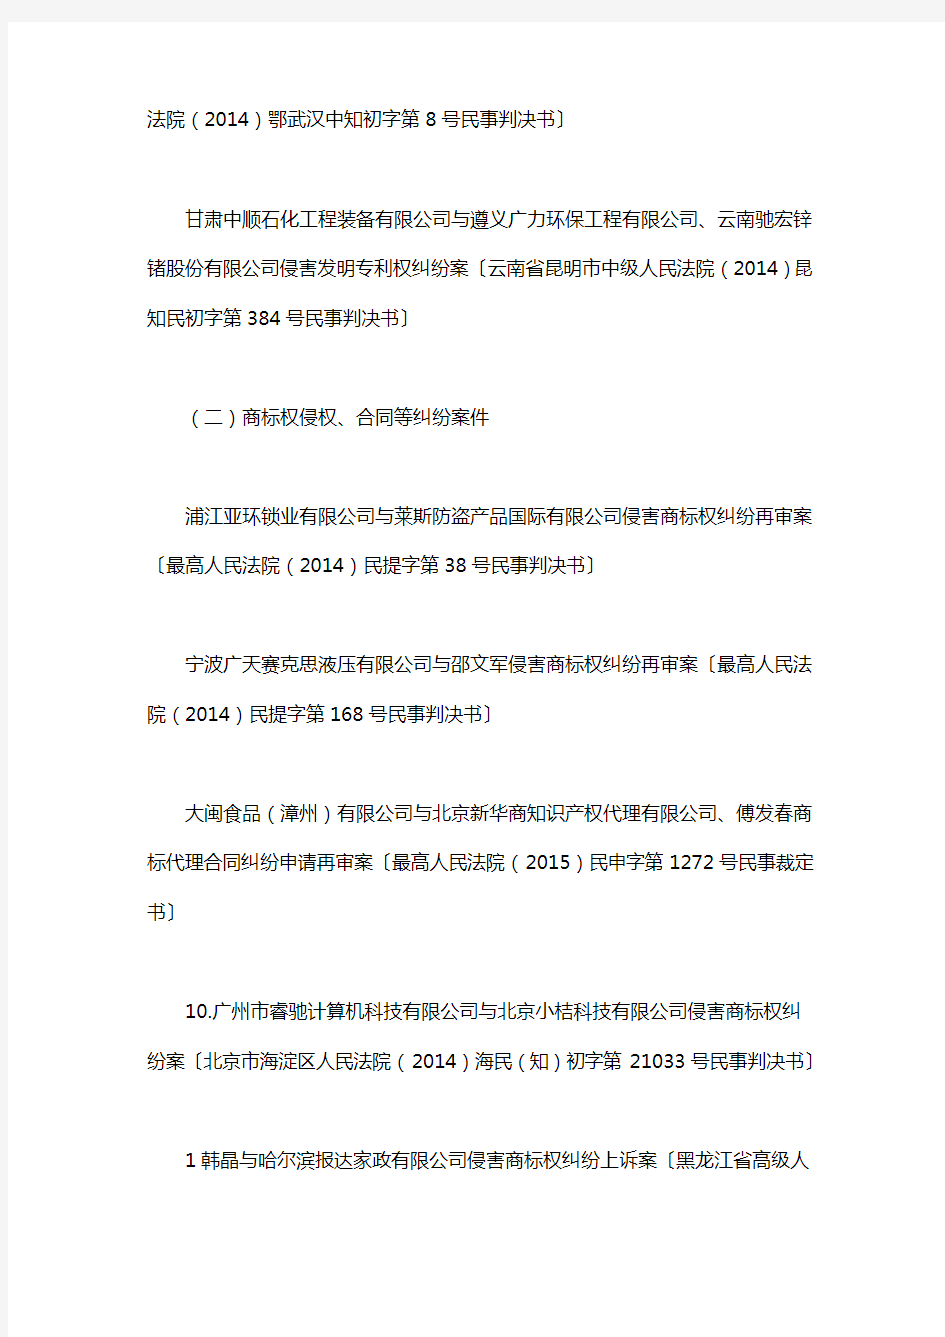 知识产权典型案例_2015年中国法院50件典型知识产权案例